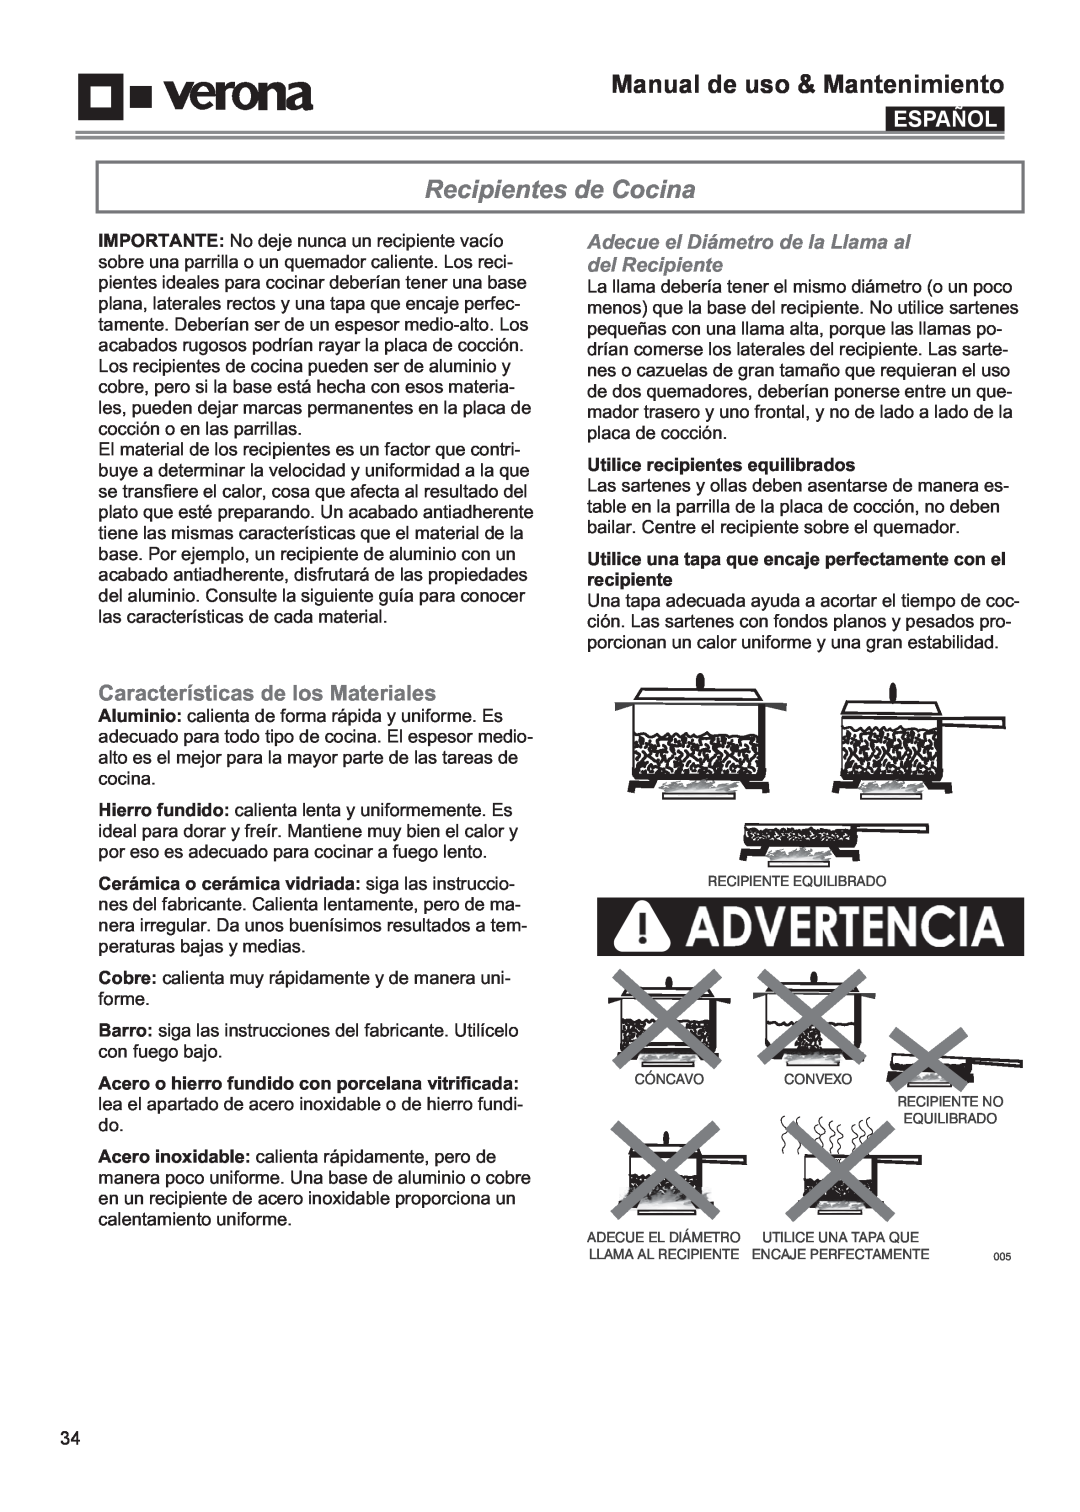 Verona VECTGMS365SS manual Recipientes de Cocina, Características de los Materiales, Manual de uso & Mantenimiento, Español 